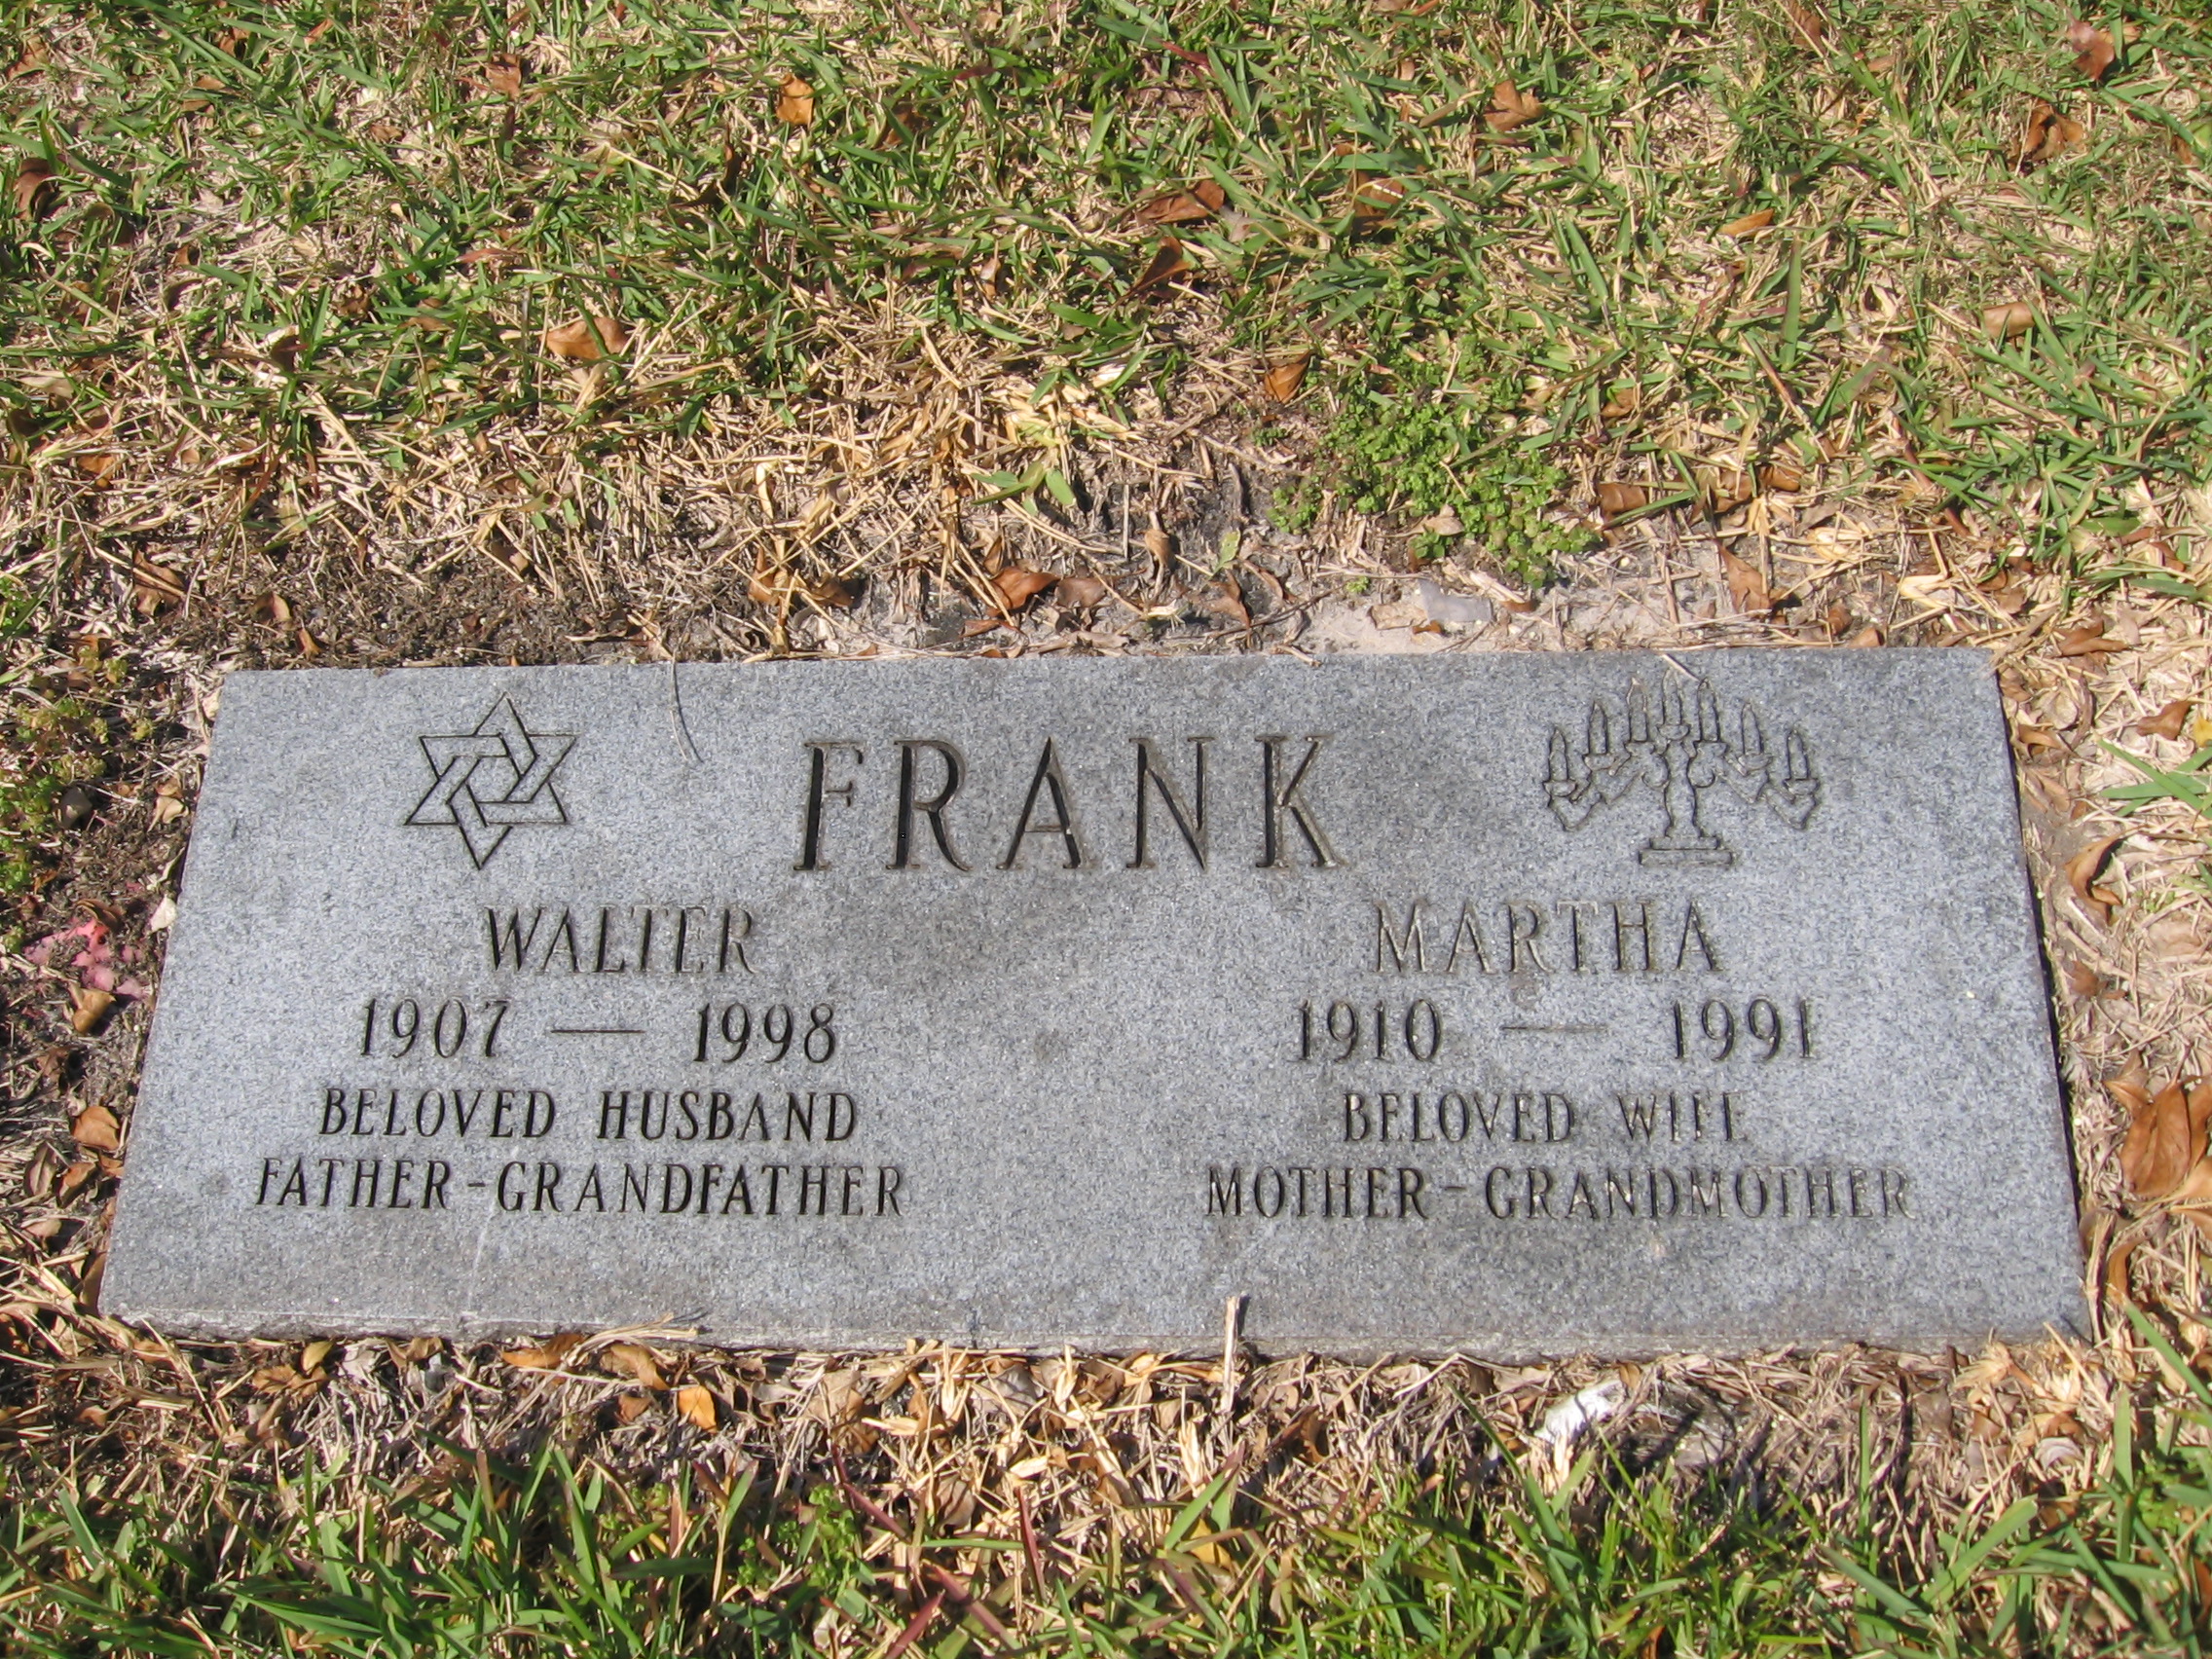 Walter Frank